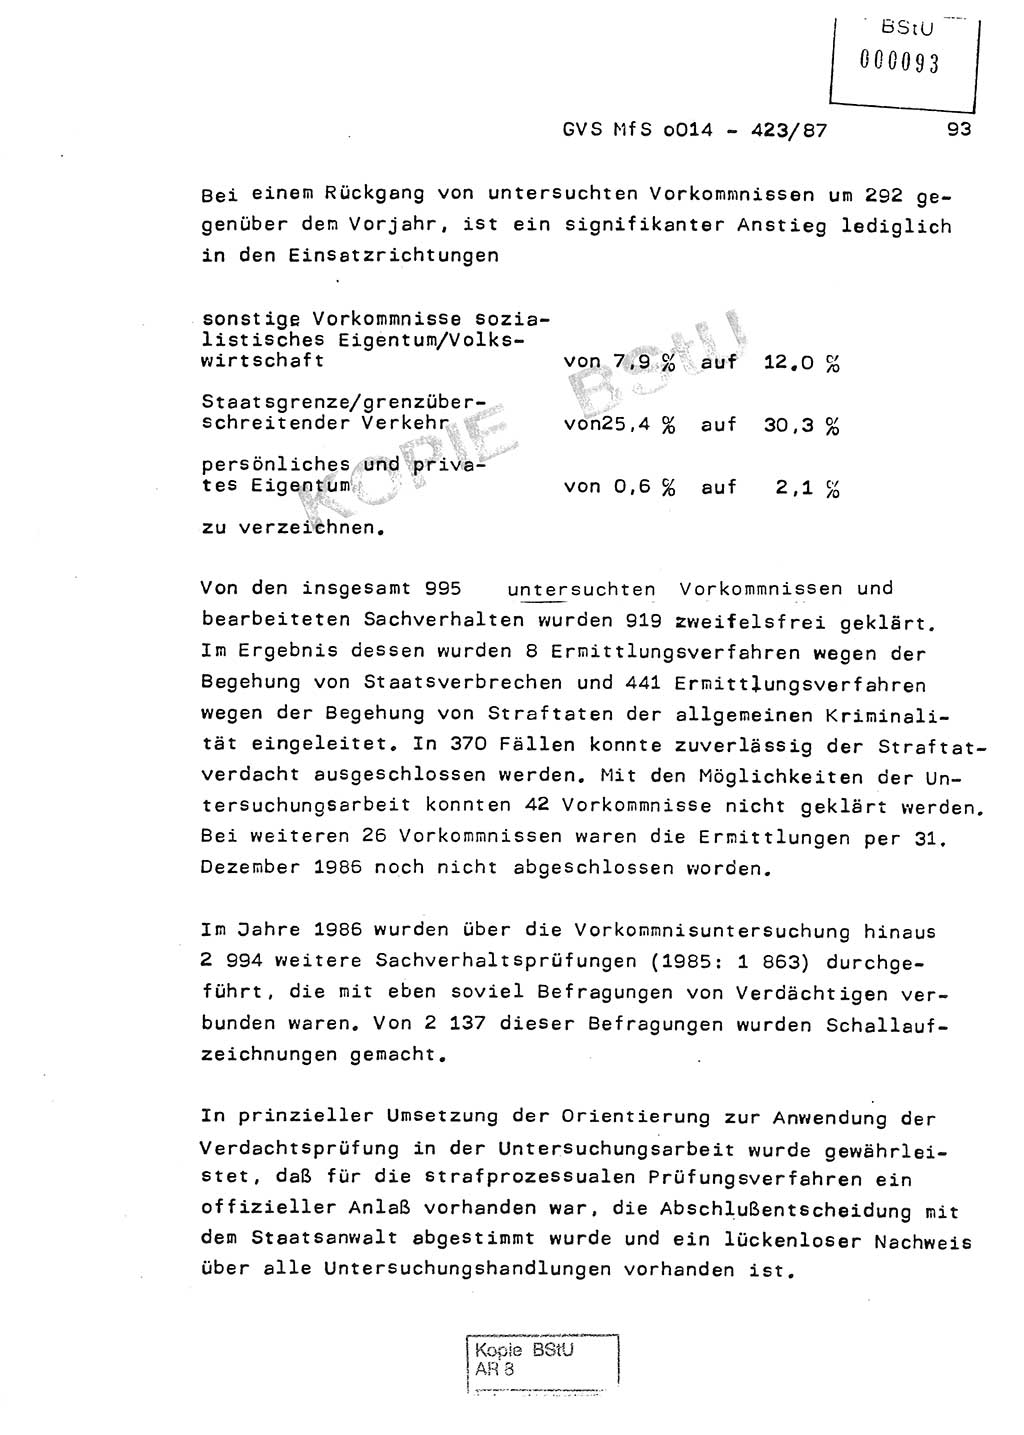 Jahresbericht der Hauptabteilung (HA) Ⅸ 1986, Einschätzung der Wirksamkeit der Untersuchungsarbeit im Jahre 1986, Ministerium für Staatssicherheit (MfS) der Deutschen Demokratischen Republik (DDR), Hauptabteilung Ⅸ, Geheime Verschlußsache (GVS) o014-423/87, Berlin 1987, Seite 93 (Einsch. MfS DDR HA Ⅸ GVS o014-423/87 1986, S. 93)